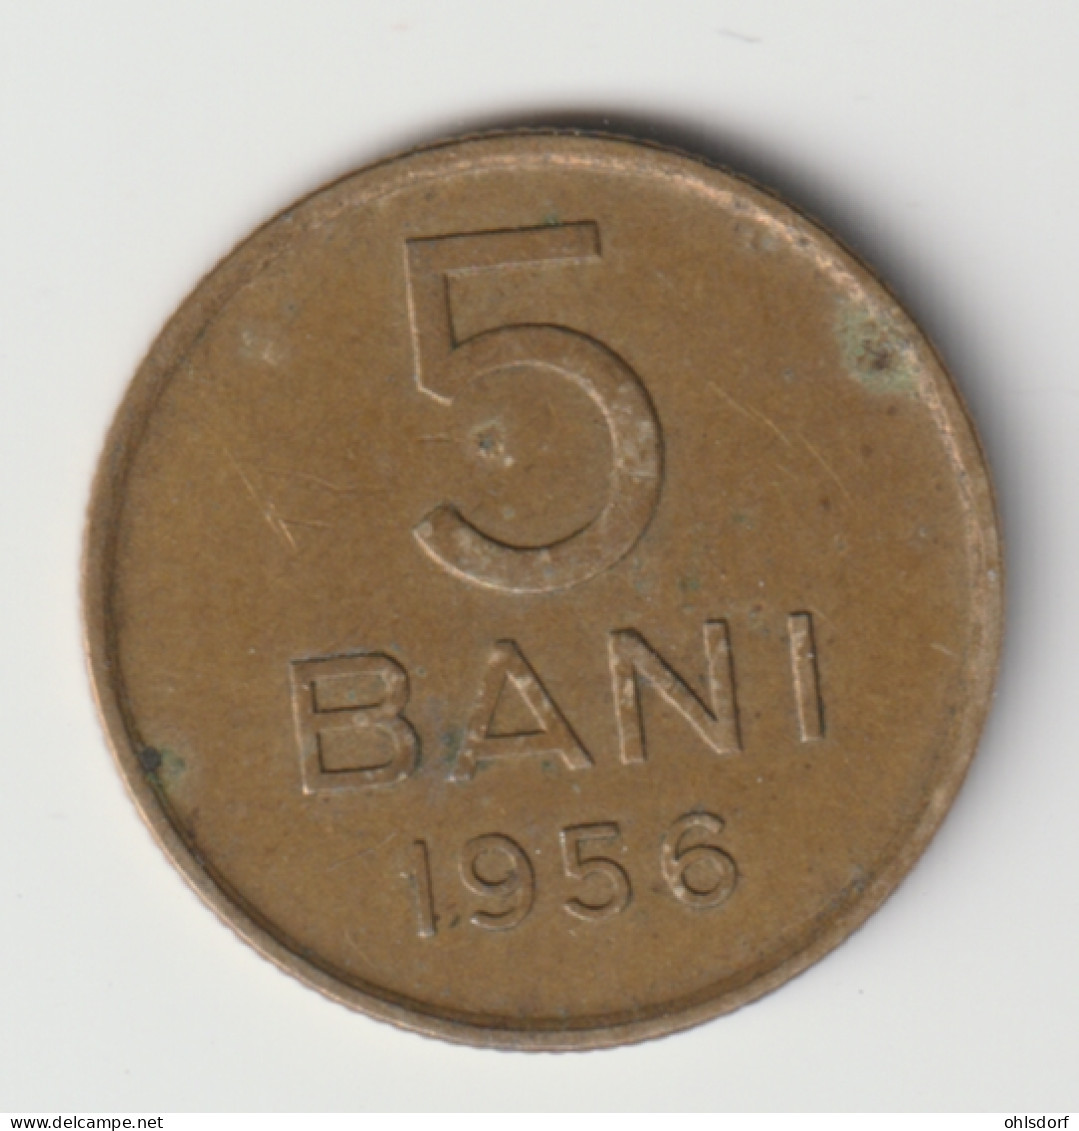 ROMANIA 1956: 5 Bani, KM 83.2 - Roumanie